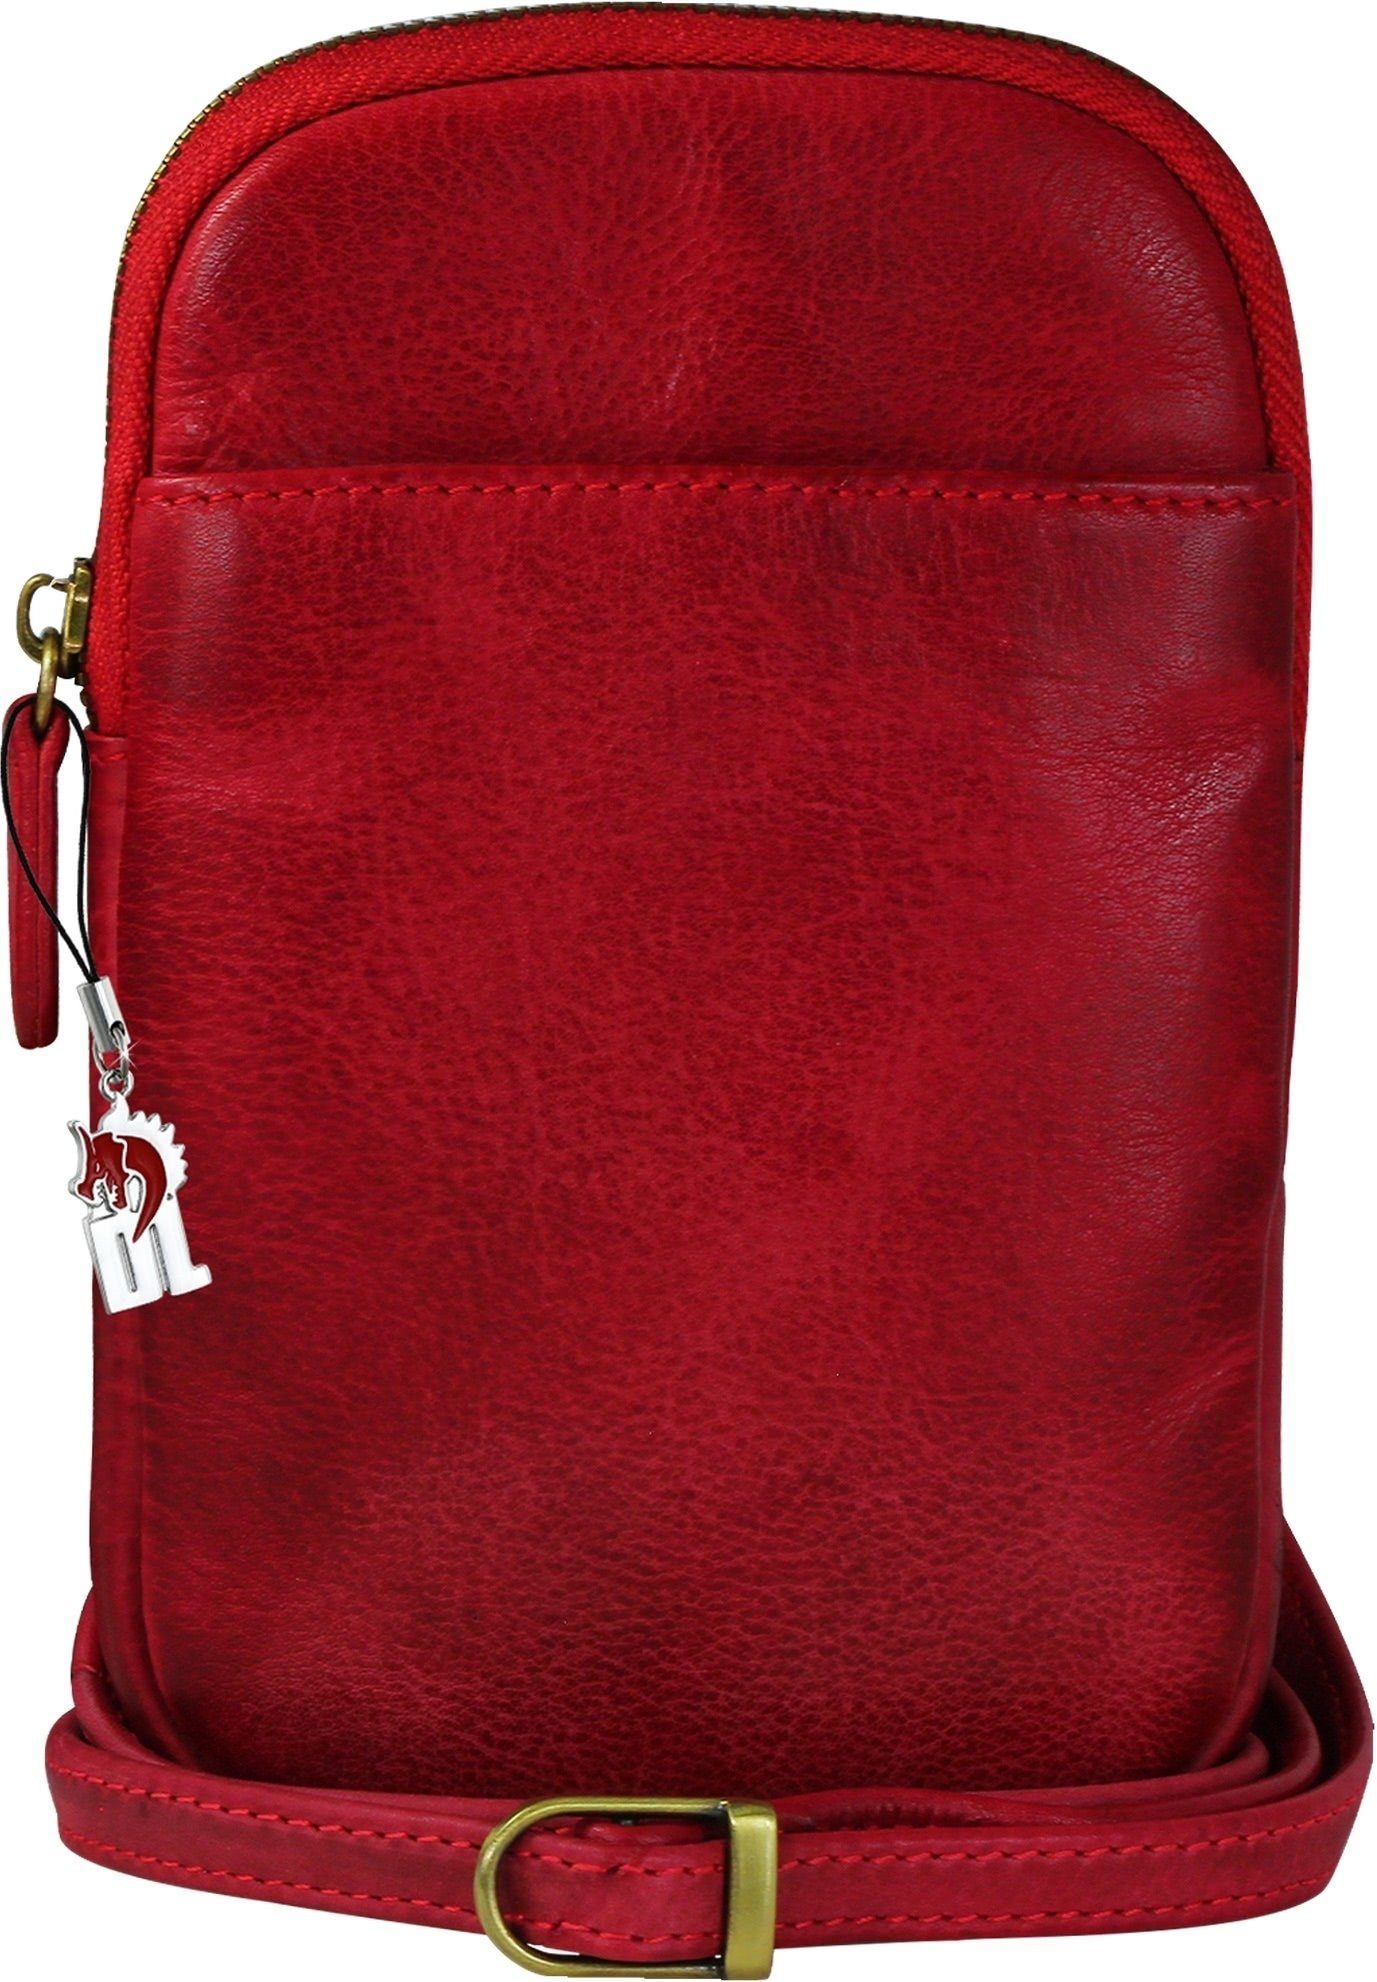 DrachenLeder Handtasche Damen Tasche rot DrachenLeder in ca. Damen, Tasche aus Herren (Handtasche), Handtasche Breite 13cm Echtleder rot